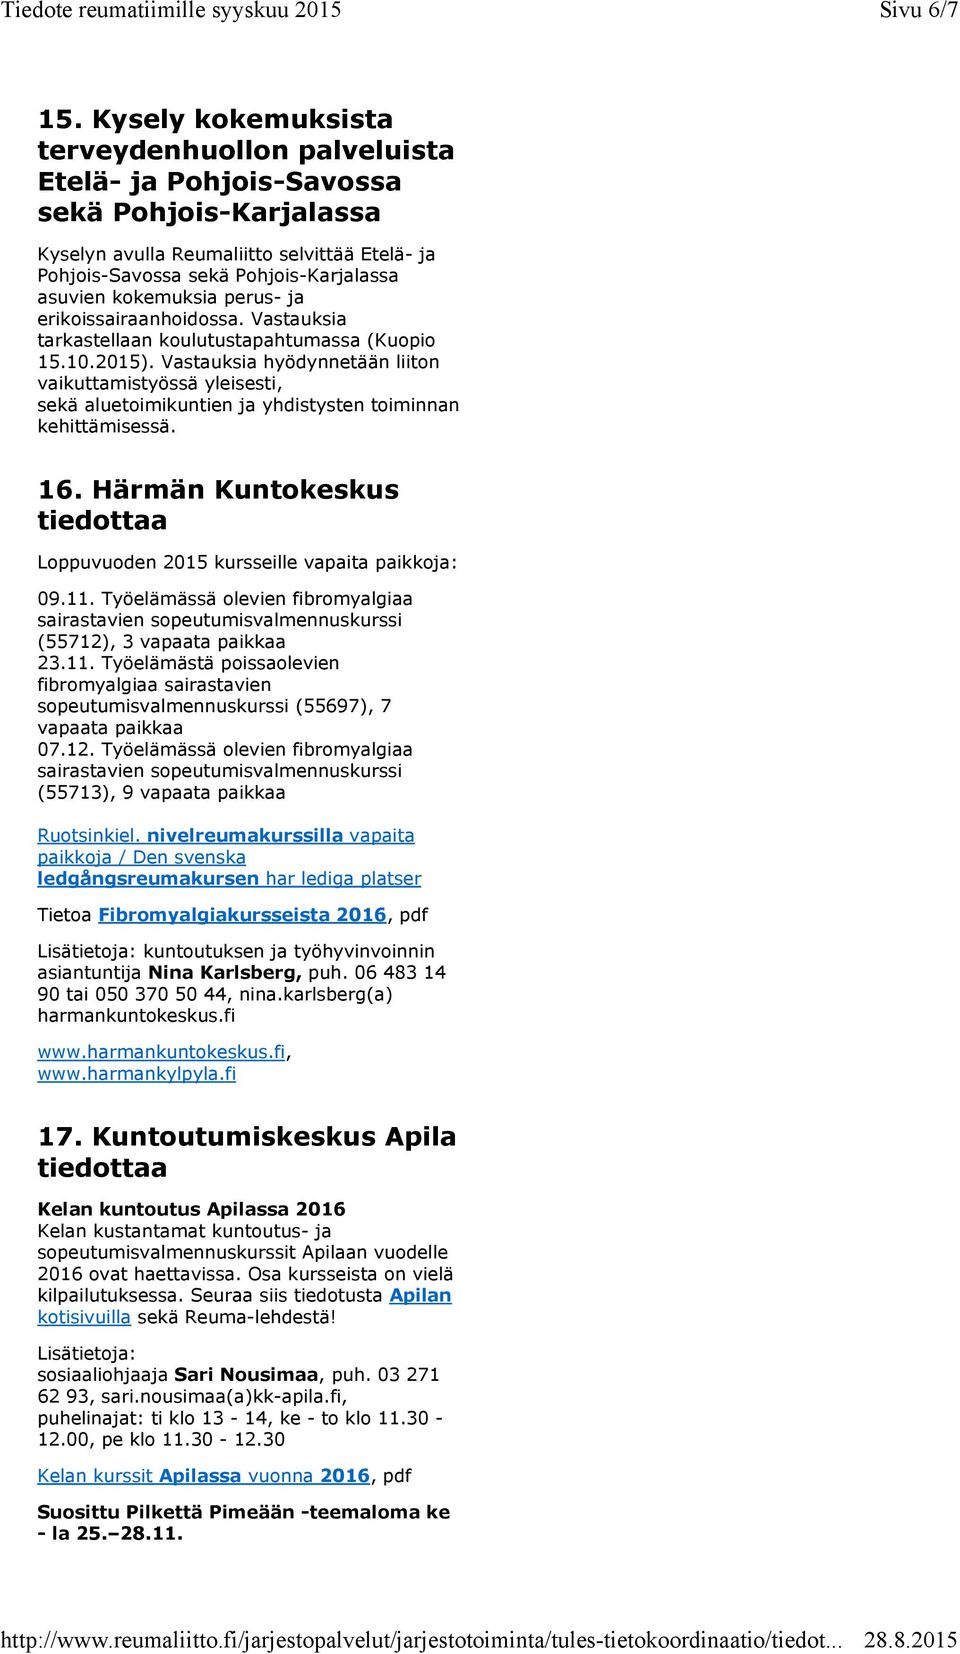 kokemuksia perus- ja erikoissairaanhoidossa. Vastauksia tarkastellaan koulutustapahtumassa (Kuopio 15.10.2015).